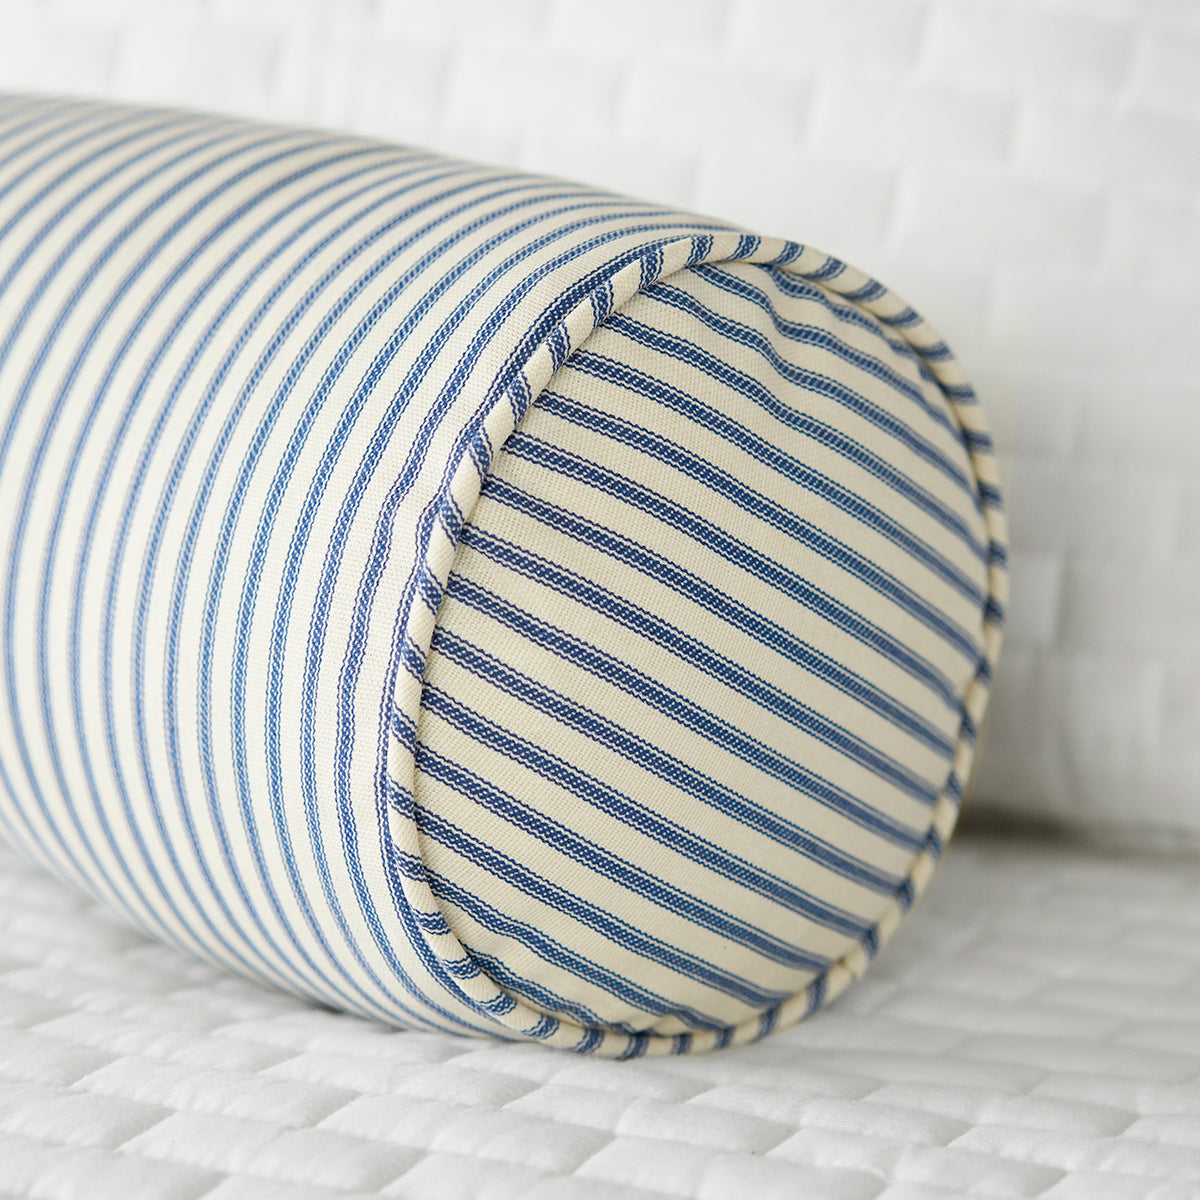 Blue Ticking Stripe Bolster Pillow on White Bed